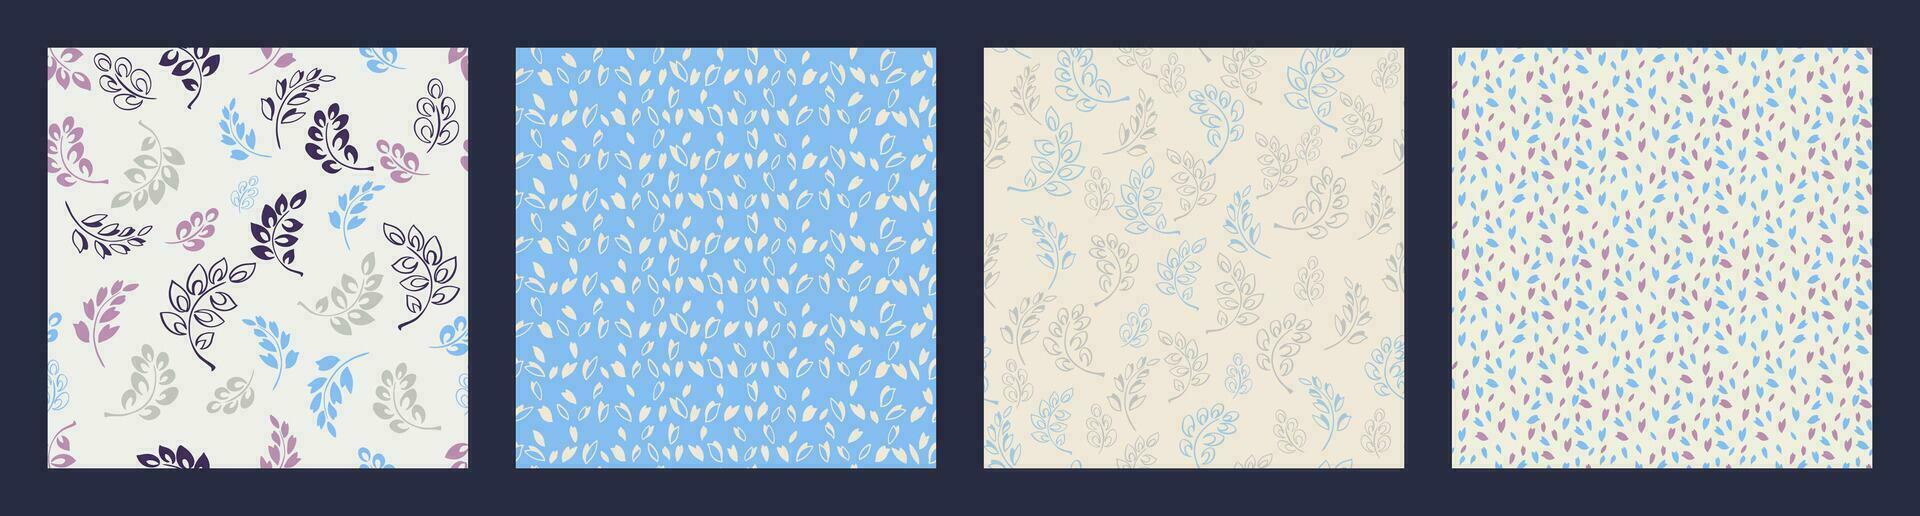 collage av abstrakt fyrkant mönster mycket liten grenar löv, skiss droppar, rader, randig, slumpmässig prickar. trendig vektor hand dragen sömlös bakgrunder pastell blå texturerat. design för tyg, mode